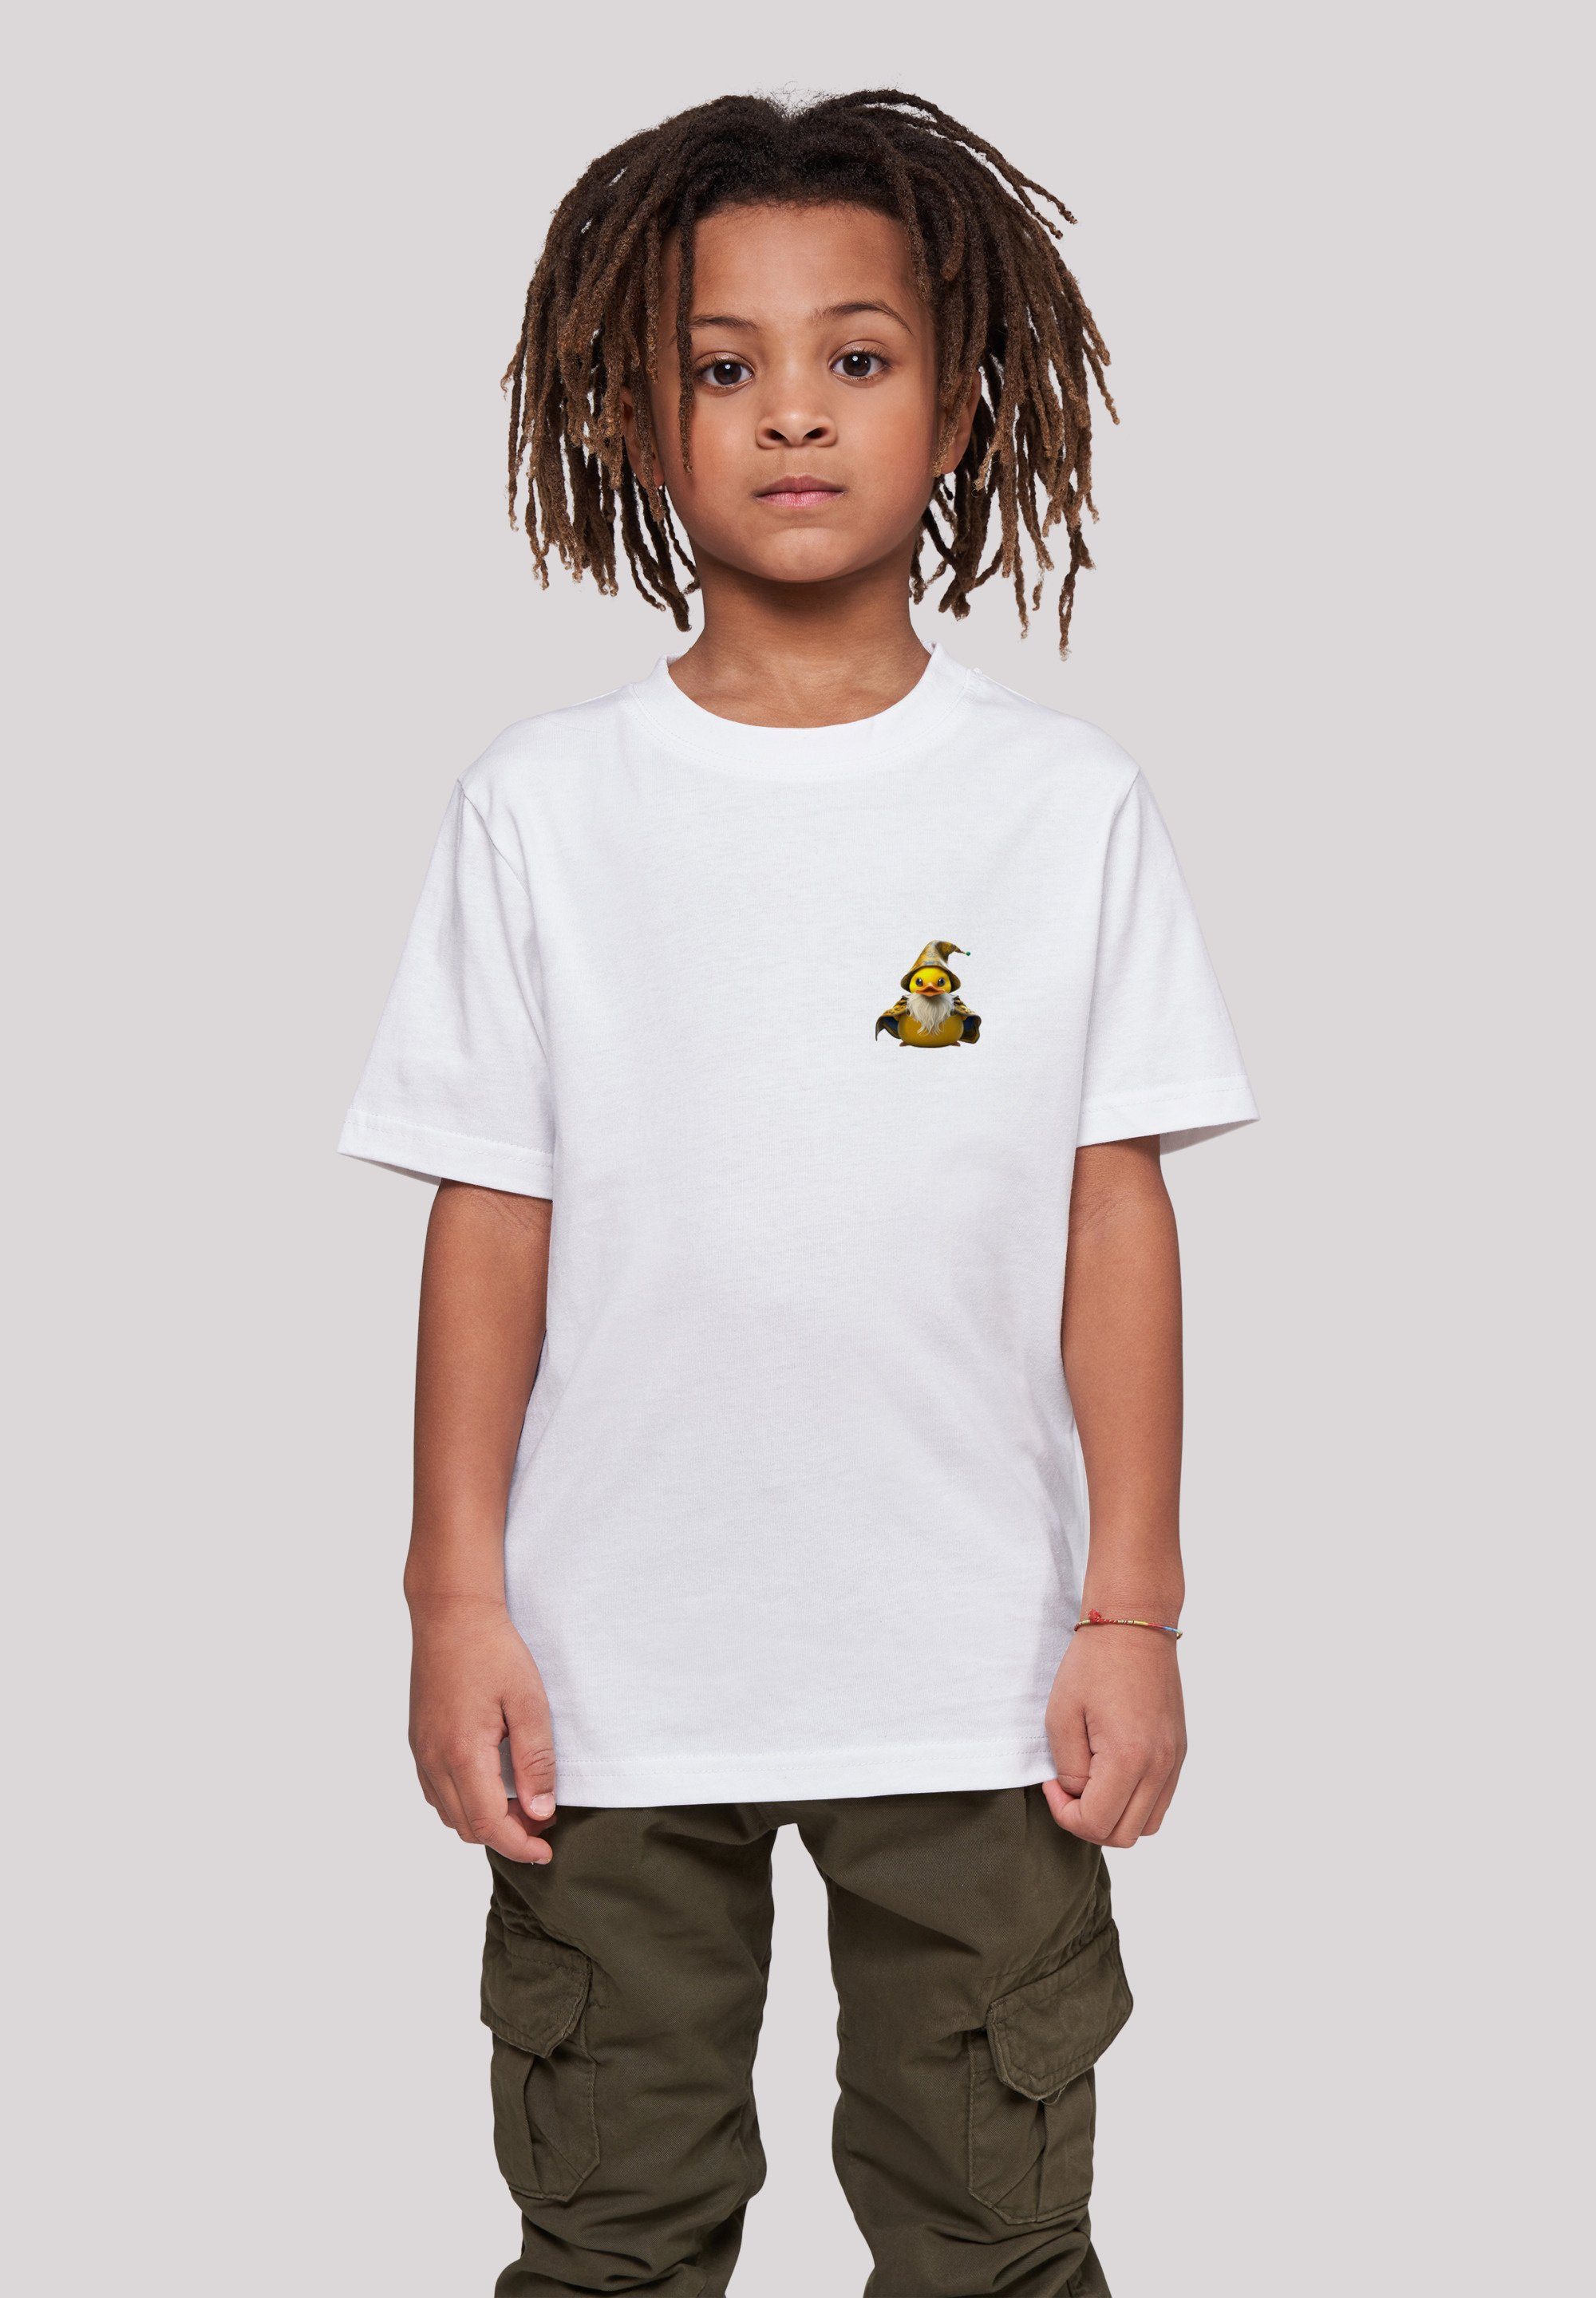 F4NT4STIC T-Shirt Rubber Duck Wizard TEE UNISEX Print, Sehr weicher  Baumwollstoff mit hohem Tragekomfort